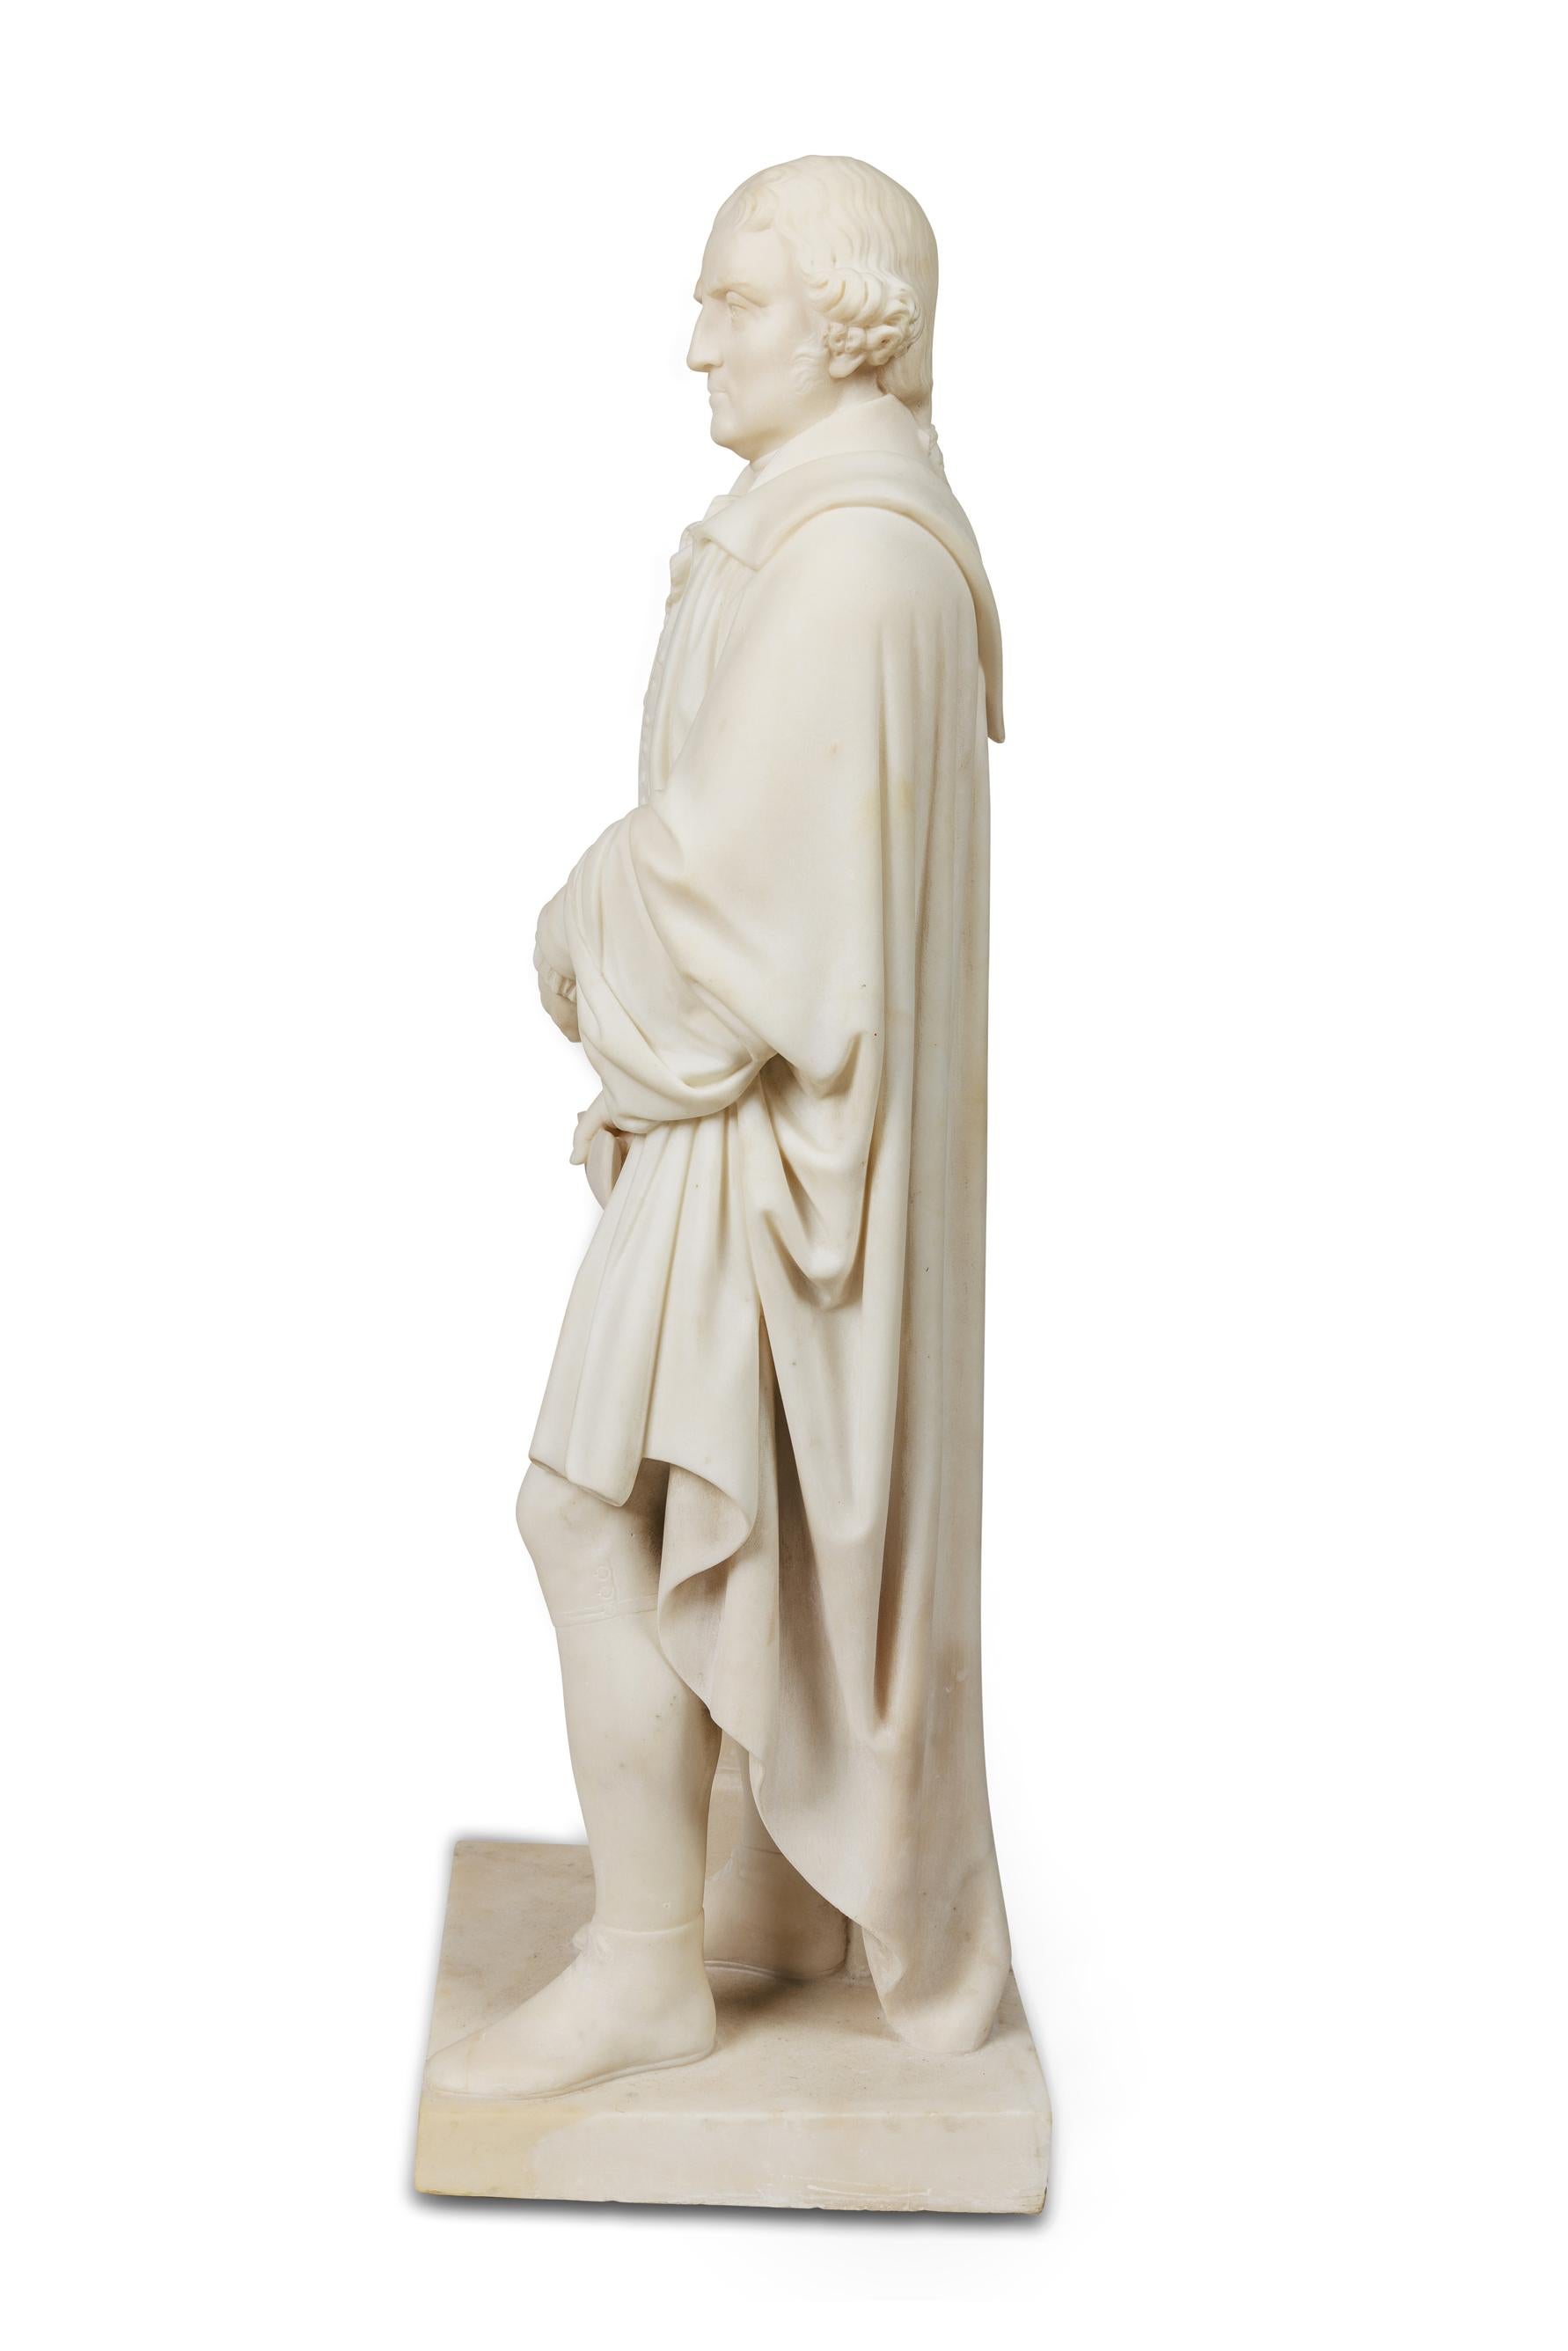 Une rare et importante sculpture américaine en marbre blanc représentant Thomas Jefferson tenant la Déclaration d'Indépendance. Circa 1870, à la manière d'Horatio Stone (1808 -1875).

Inscrit sur le parchemin : Déclaration d'indépendance, Il devient